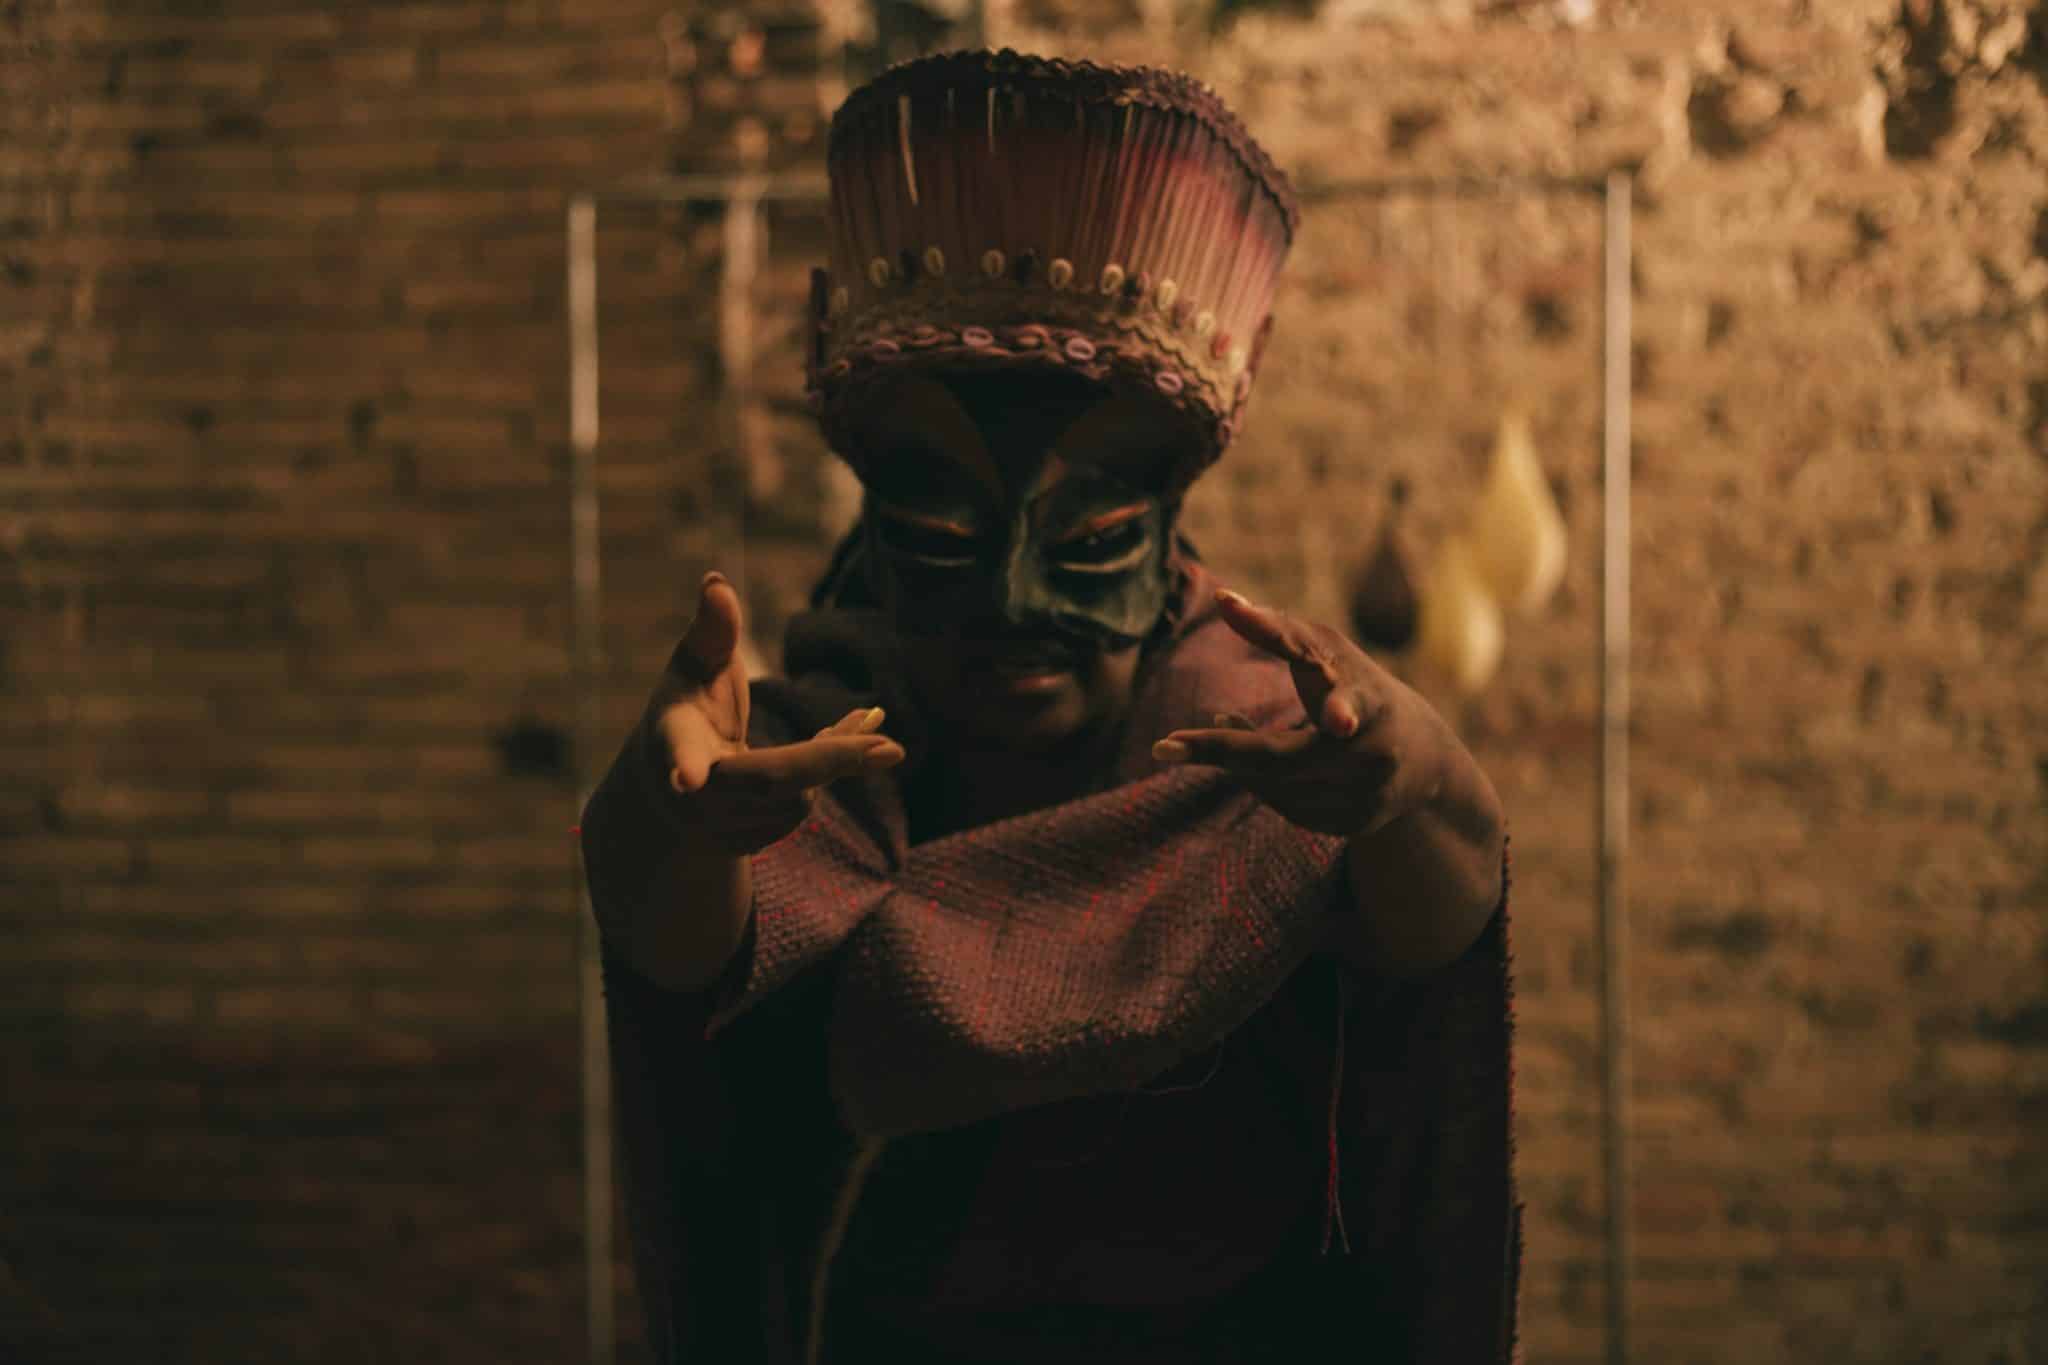 revistaprosaversoearte.com - Cia do Despejo estreia o espetáculo de teatro-dança 'Ireti', inspirado na mitologia Iorubá